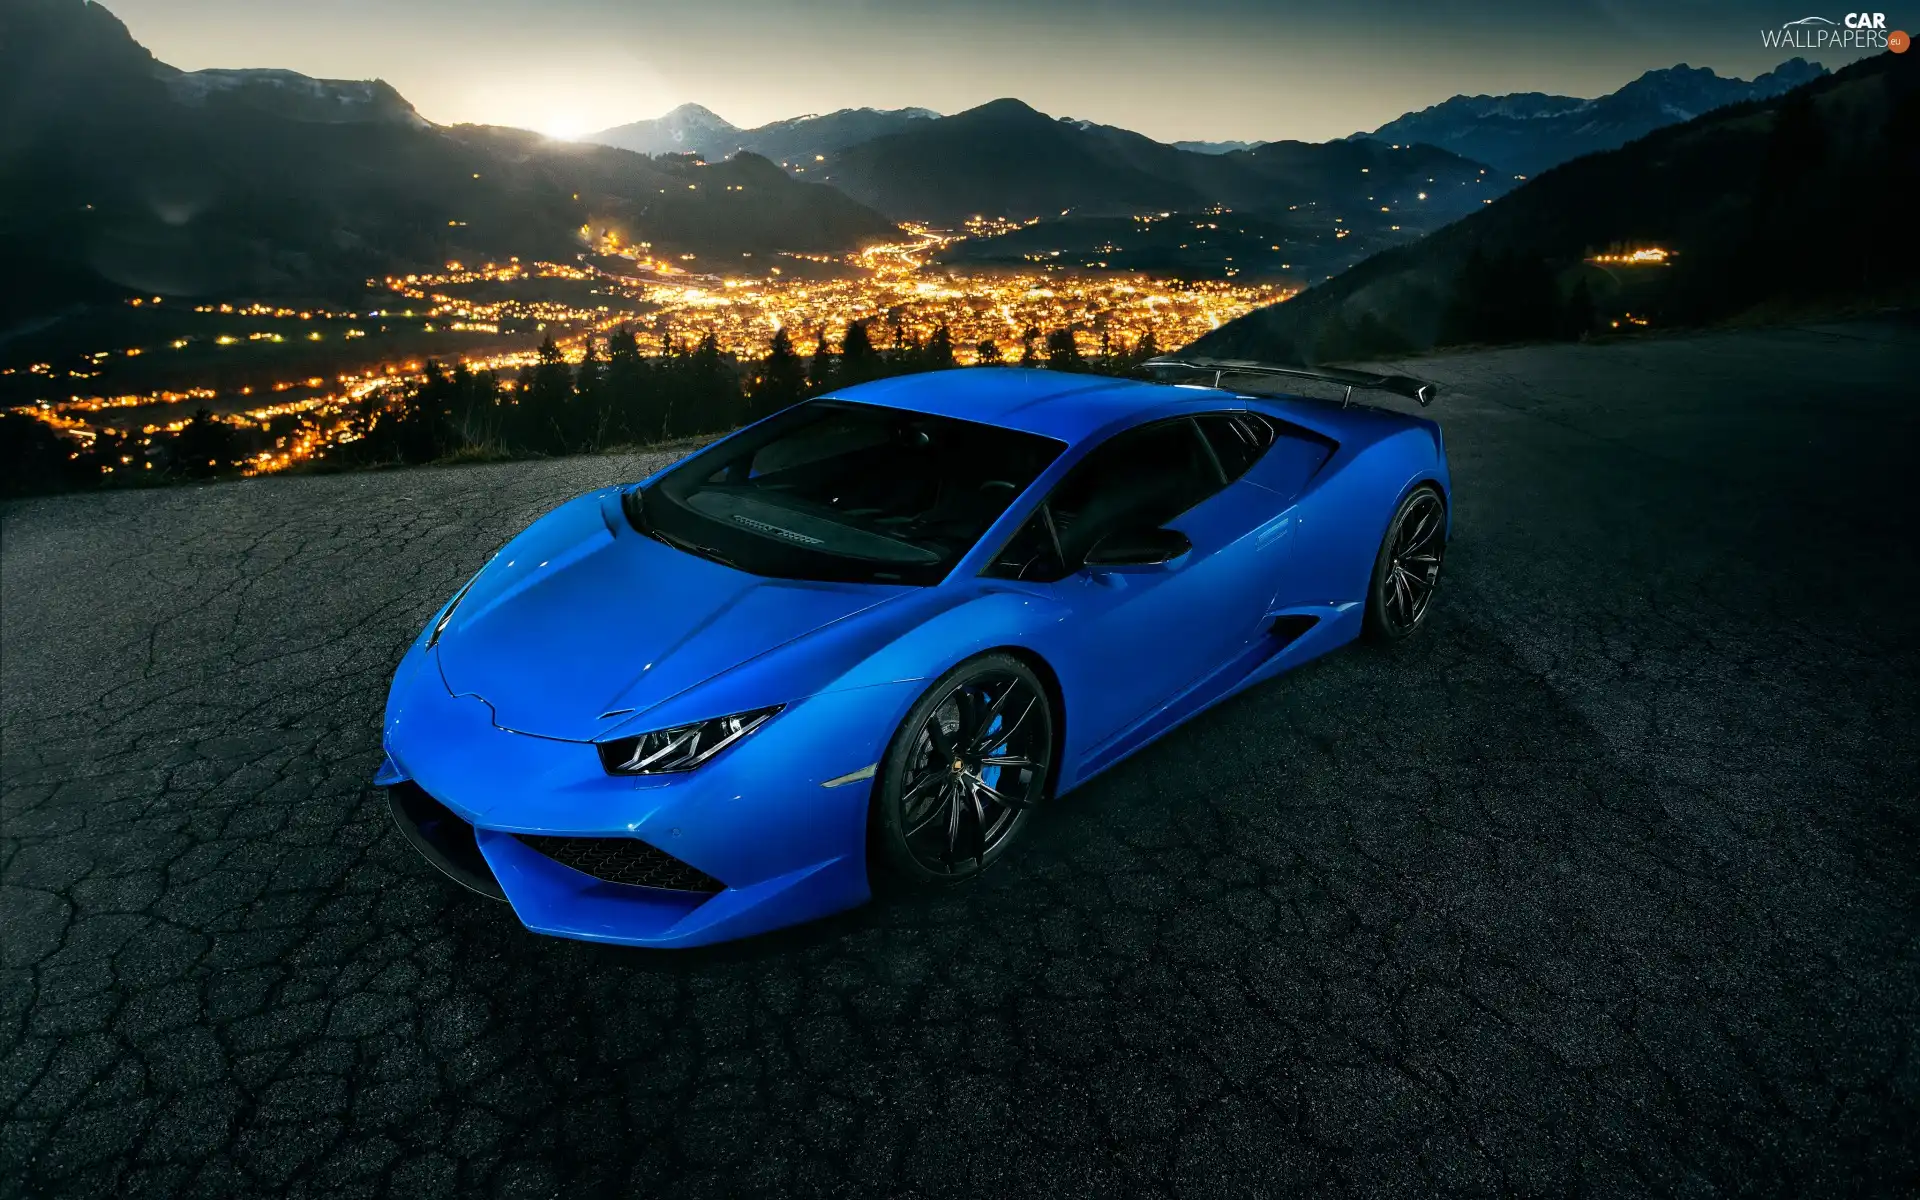 Blue, Lamborghini Huracan